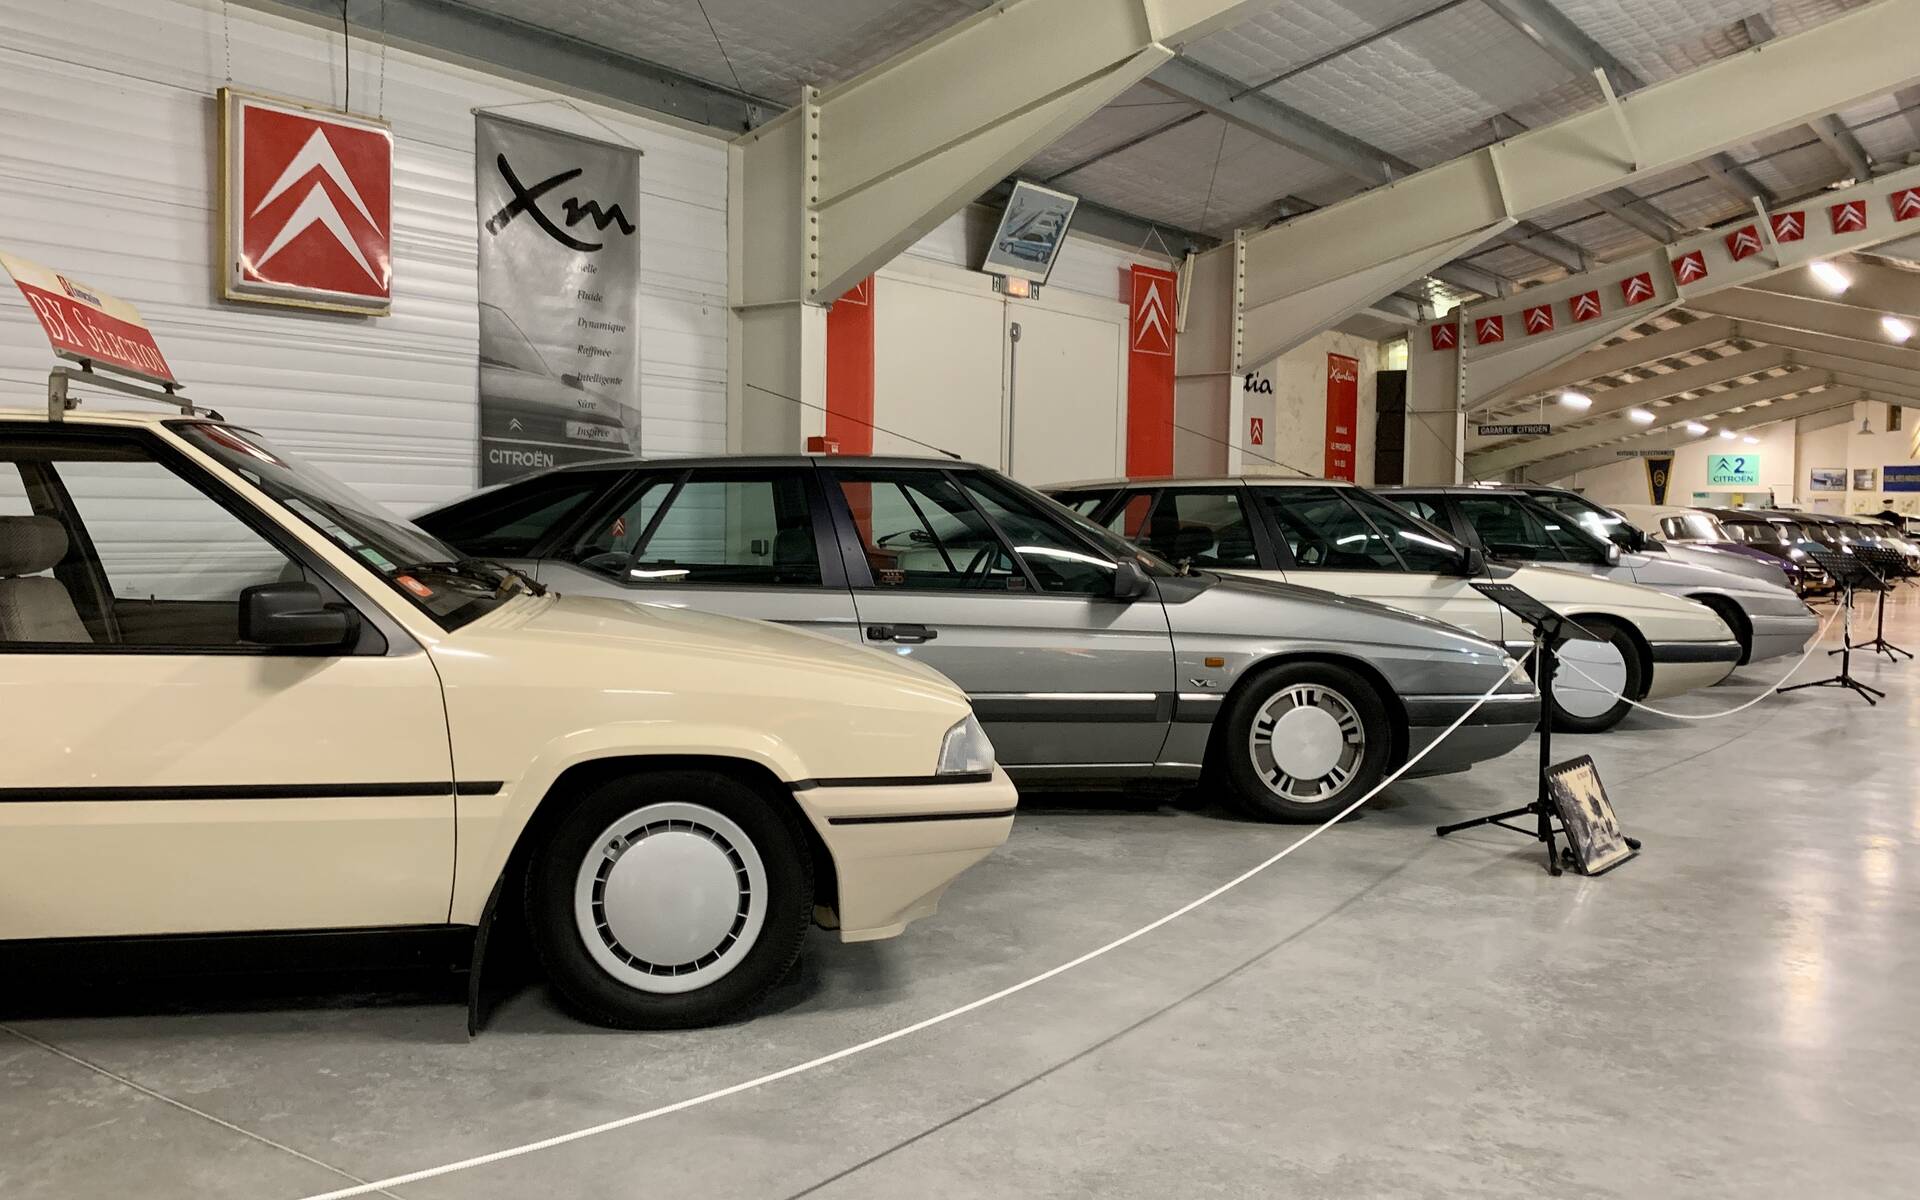 32 - Photos: plus de 100 Citroën d'exception réunies dans un musée en France 543100-photos-plus-de-100-citroen-d-exception-reunies-dans-un-musee-en-france